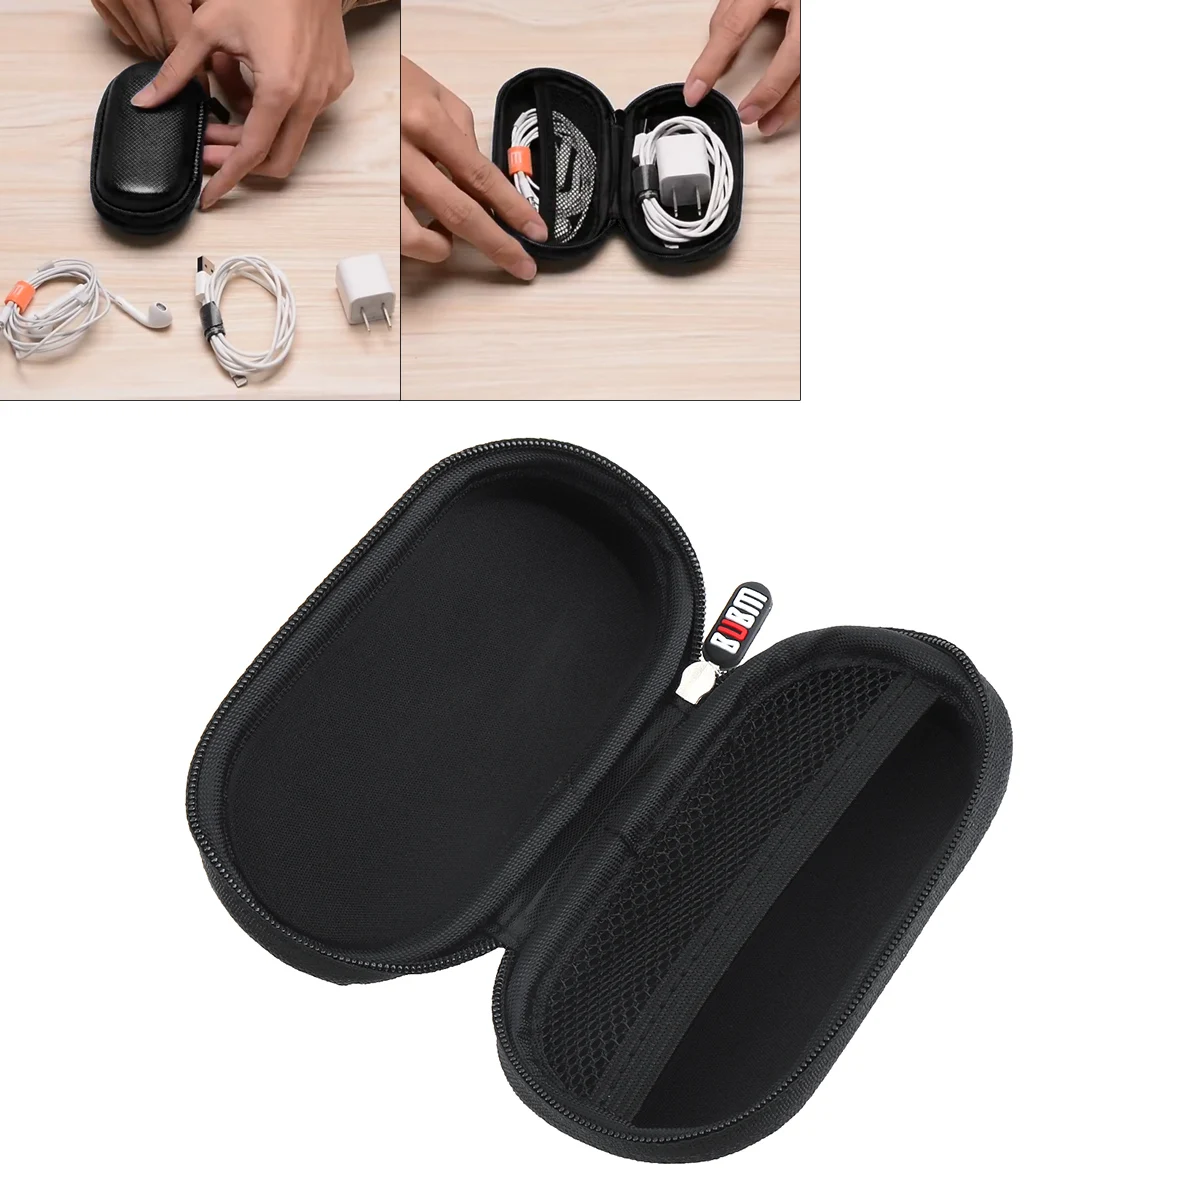 Чехол для жесткого USB флеш-накопителя BUBM/Дорожная сумка для переноски для usb-флешек, sd-карт, кабели для наушников и других мелких аксессуаров